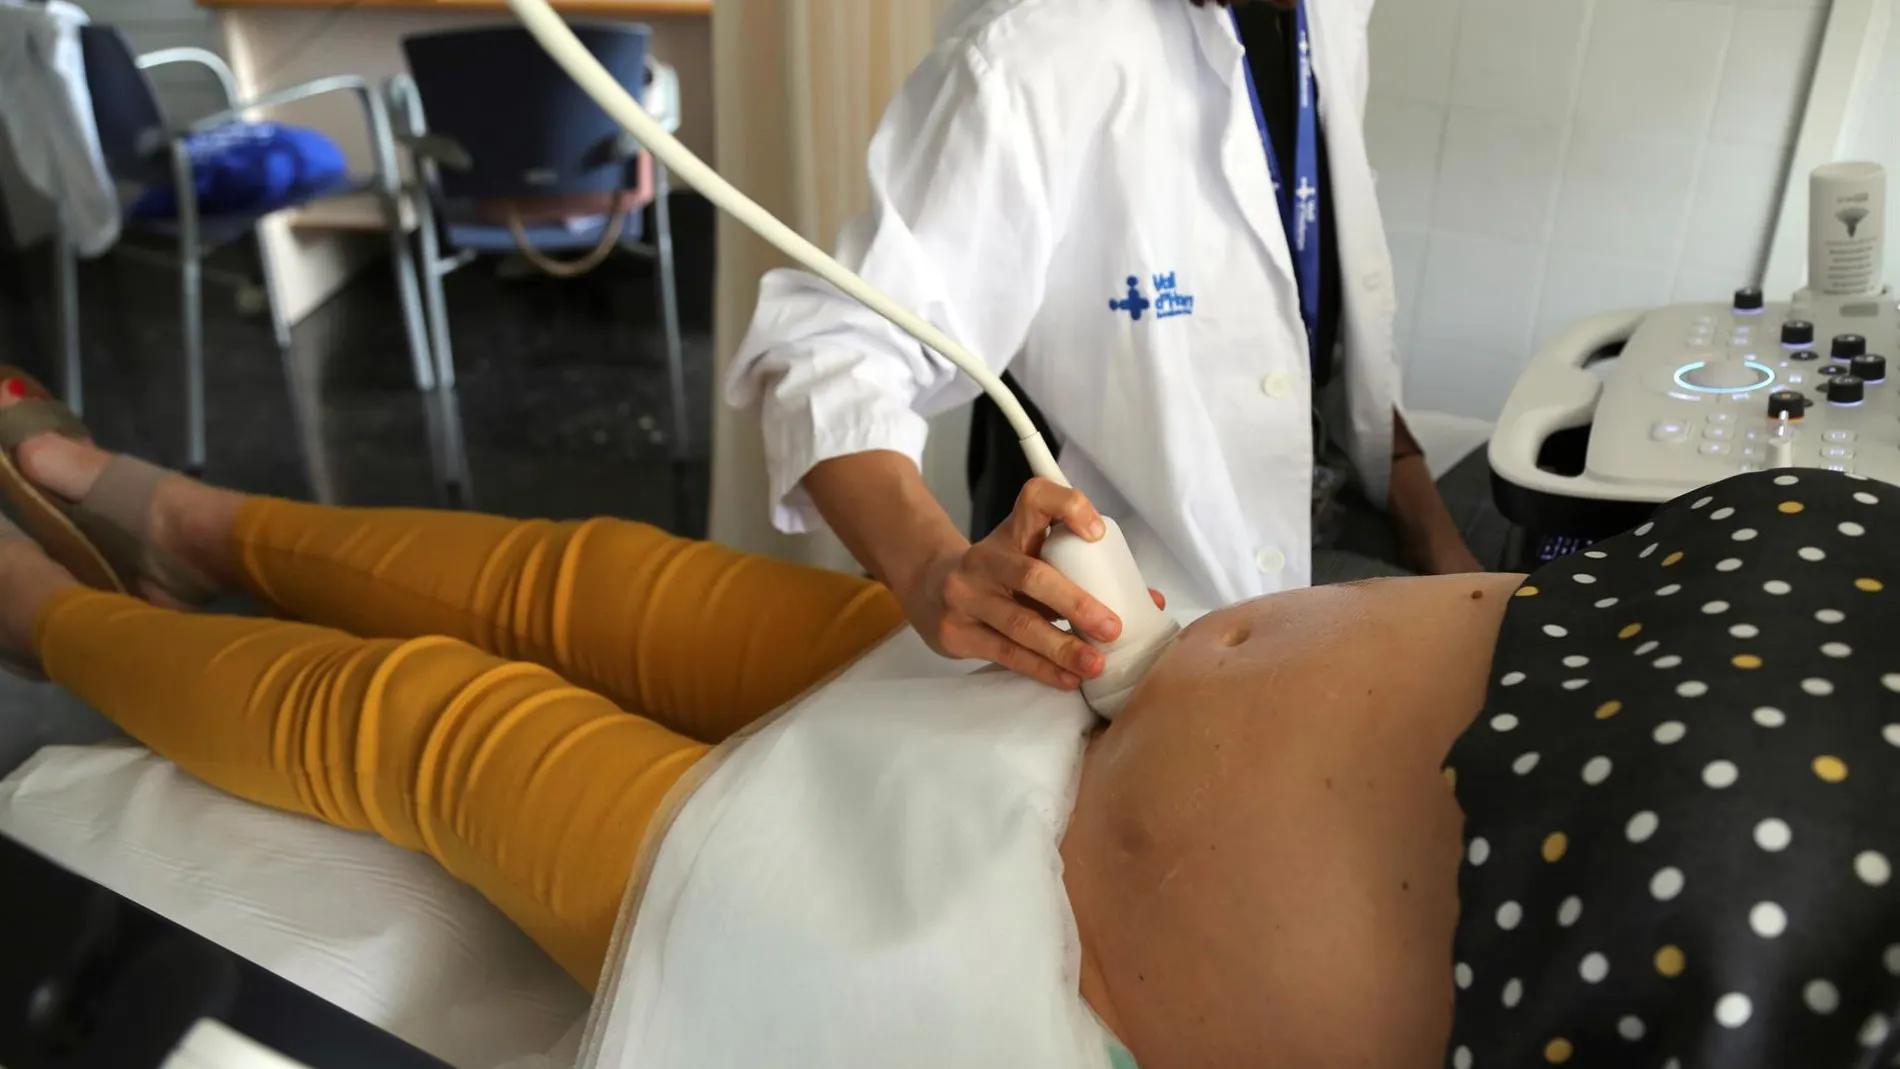 Muere una mujer de 37 años con coronavirus en Gijón tras dar a luz